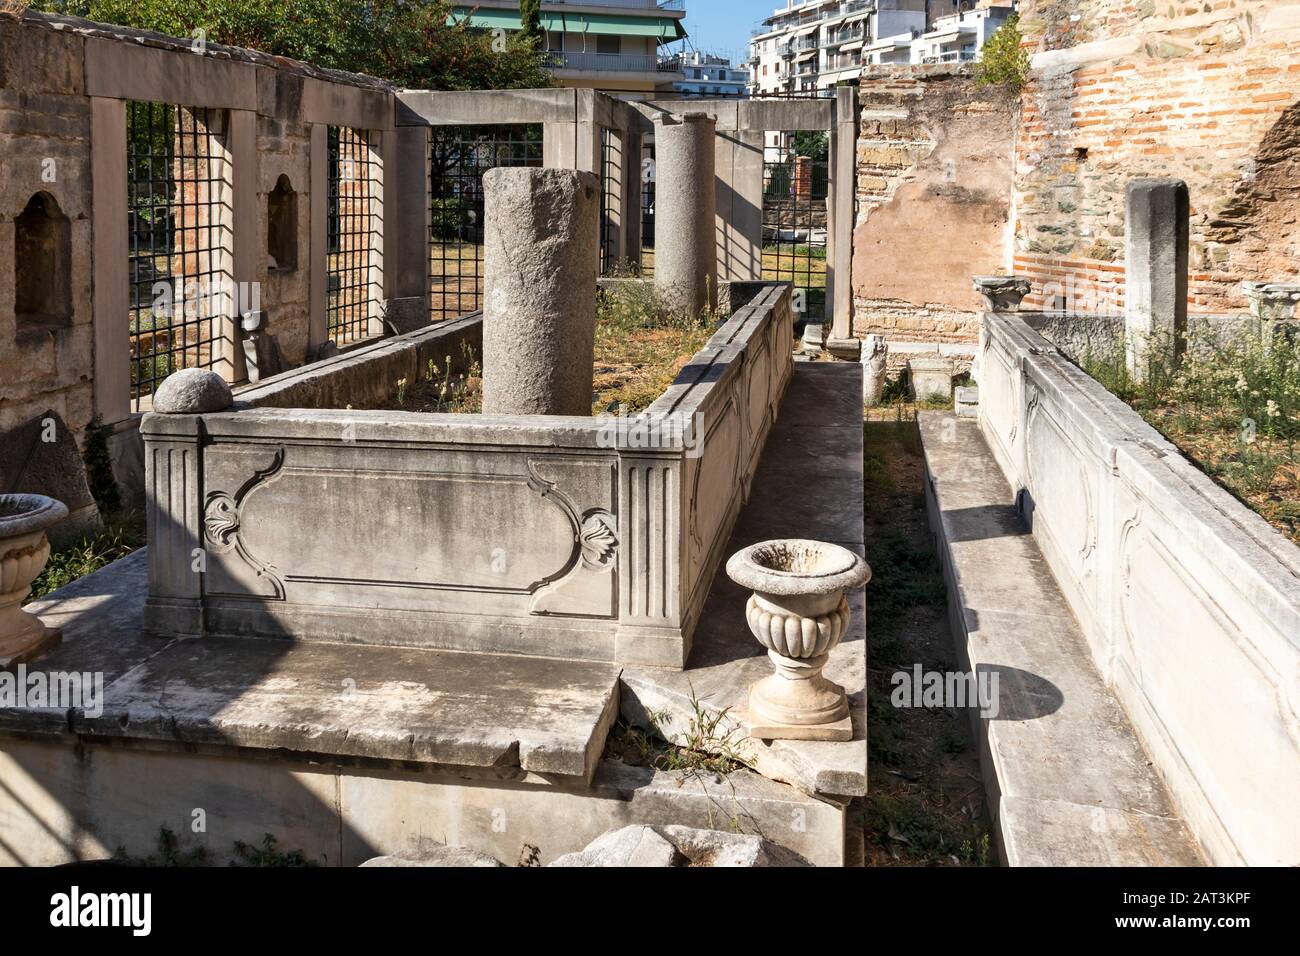 Rotonde Temple romain dans le centre de ville de Thessalonique, Macédoine Centrale, Grèce Banque D'Images